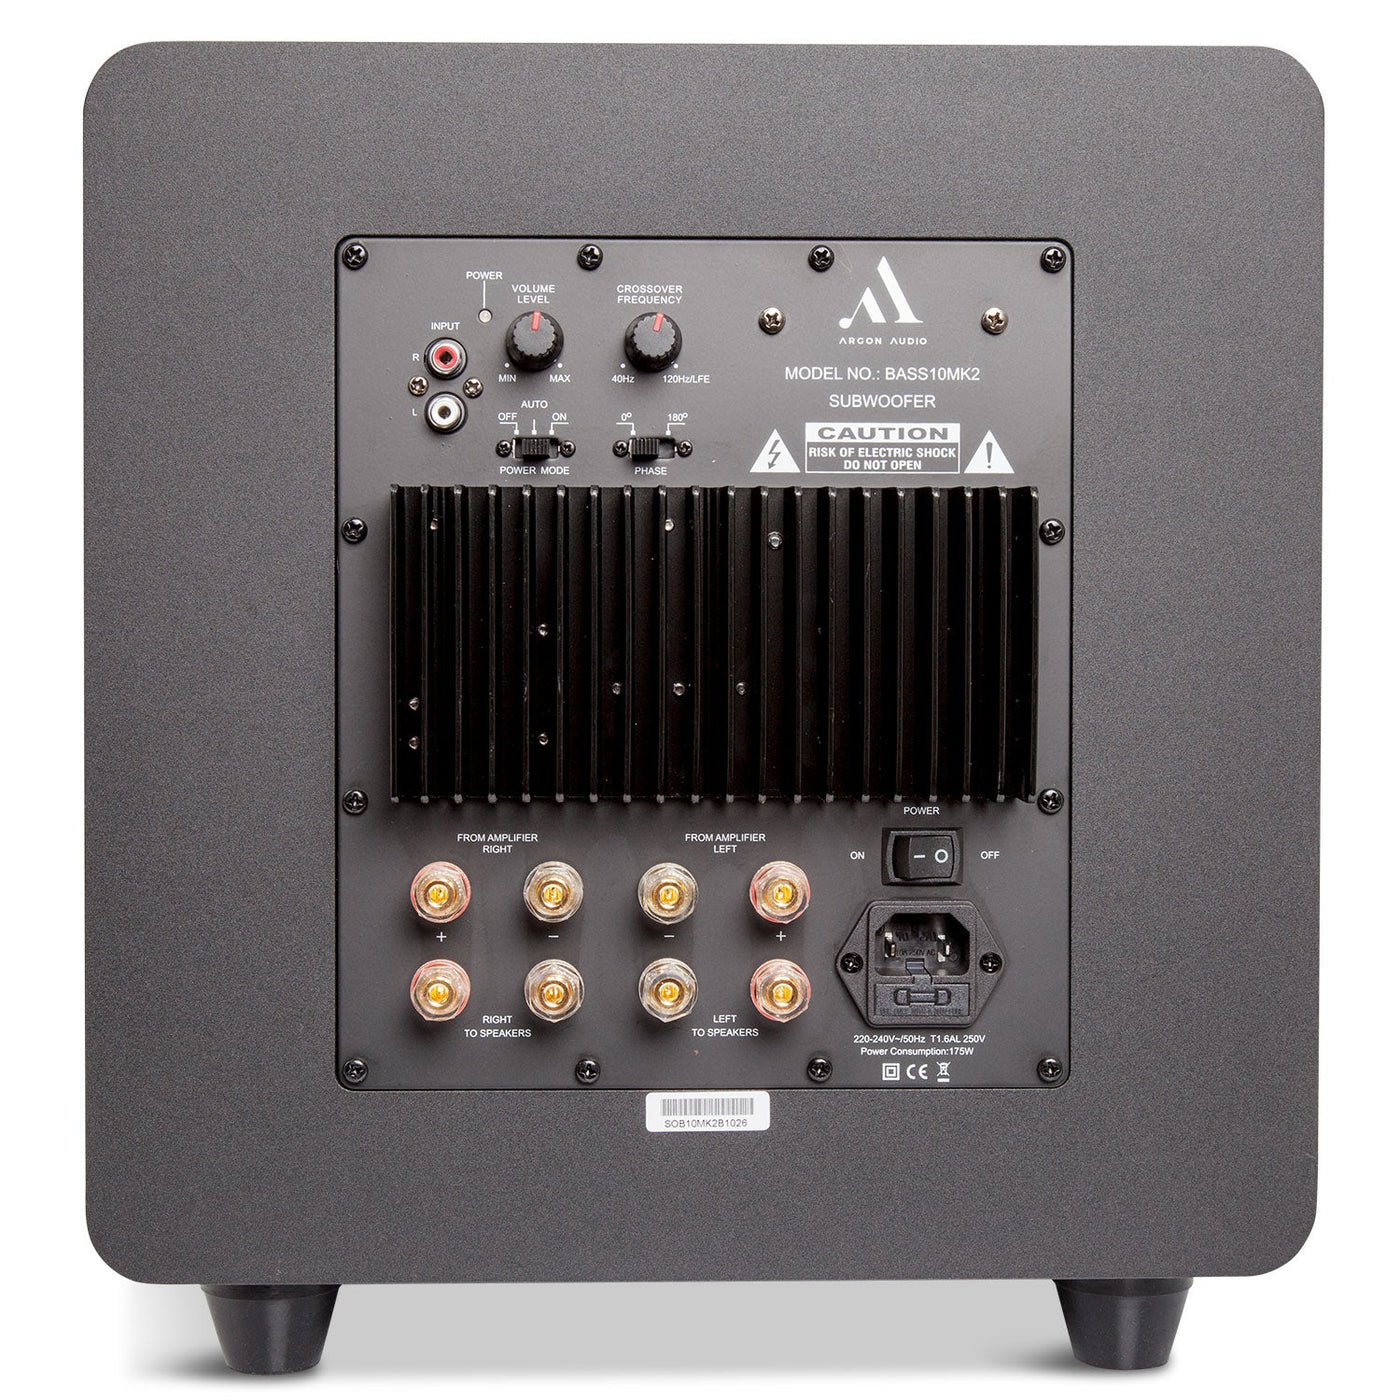 Argon Audio BASS10 MK2 Subwoofer